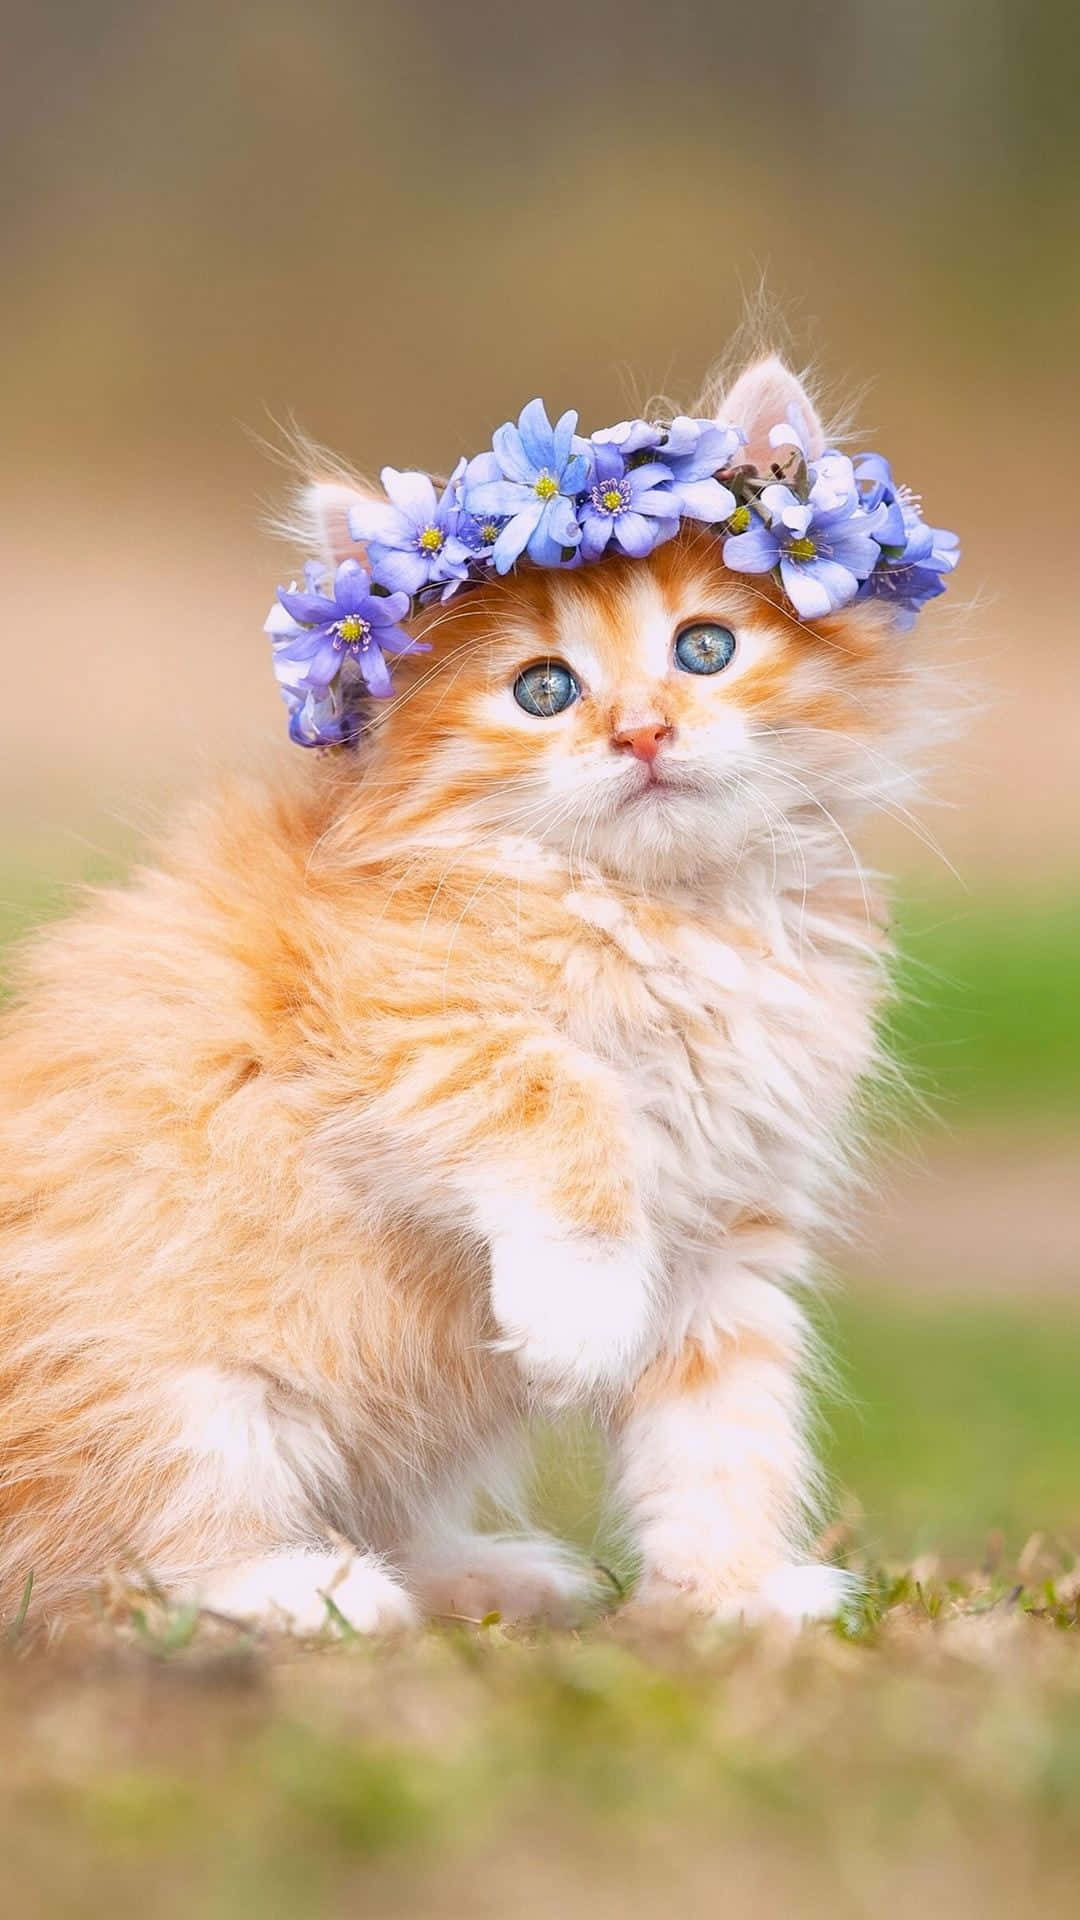 This cute little Kitten Cat will melt your heart!